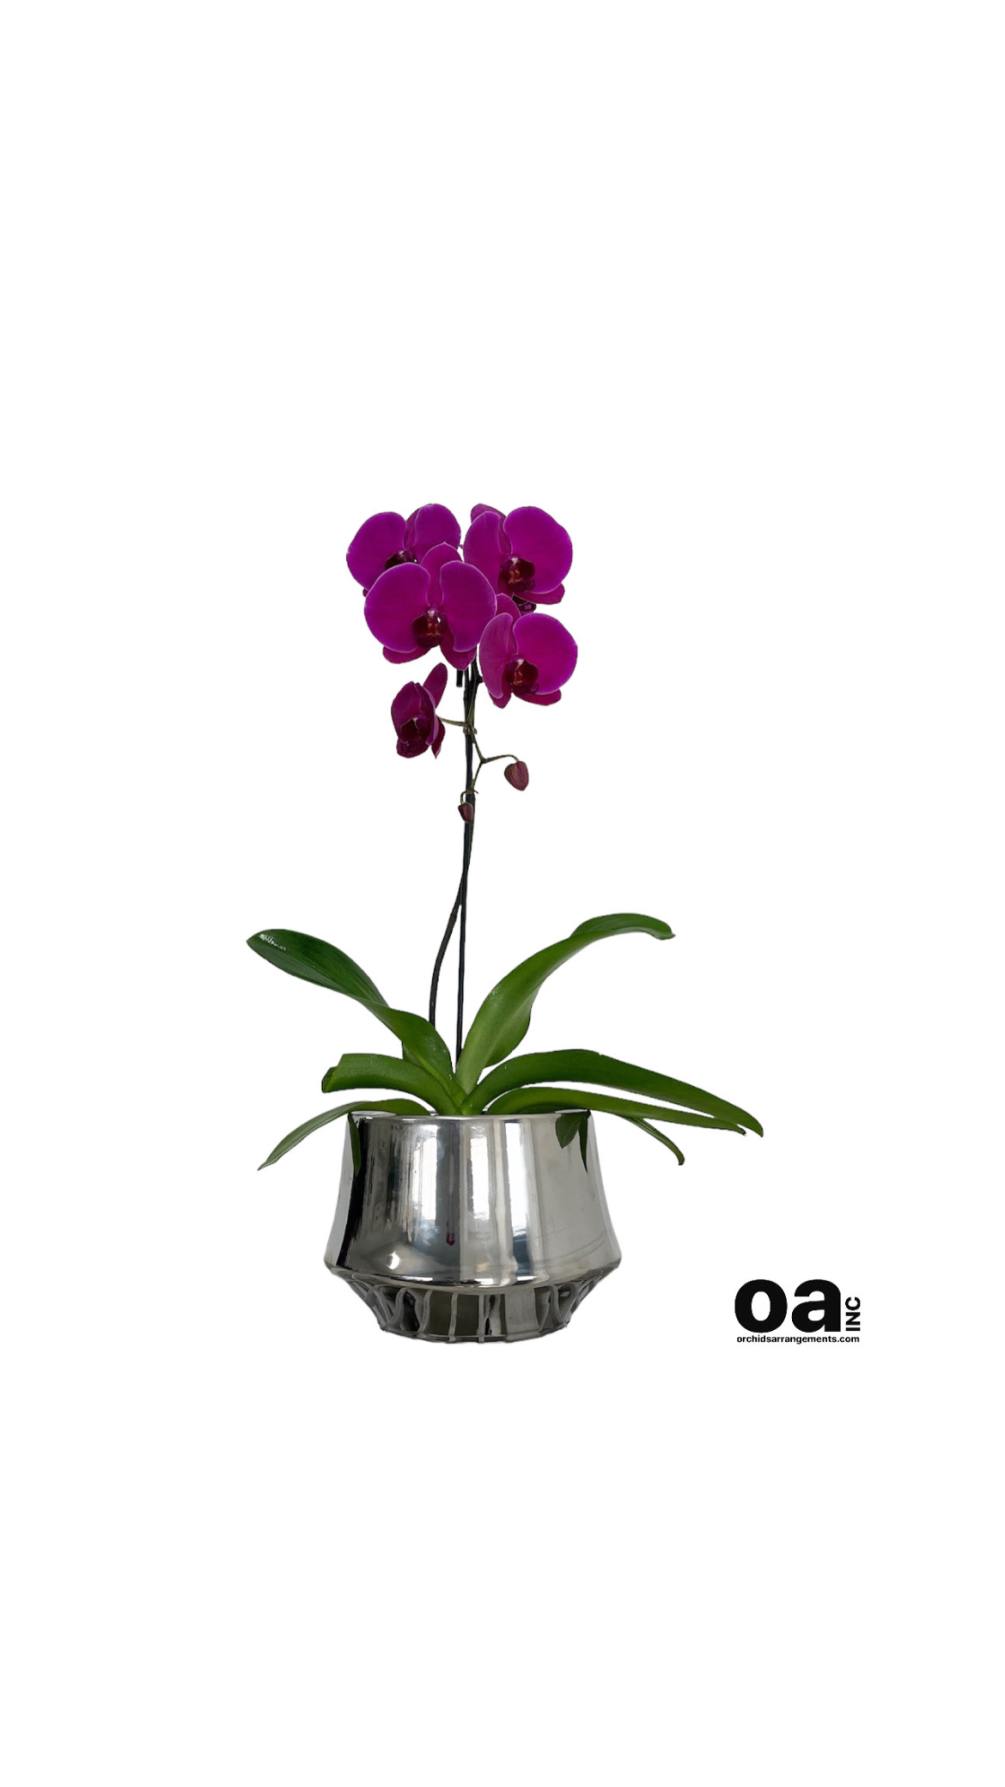 Floral Brickell orchids 
1 purple orchid flower 8&quot; D x 7&quot; T